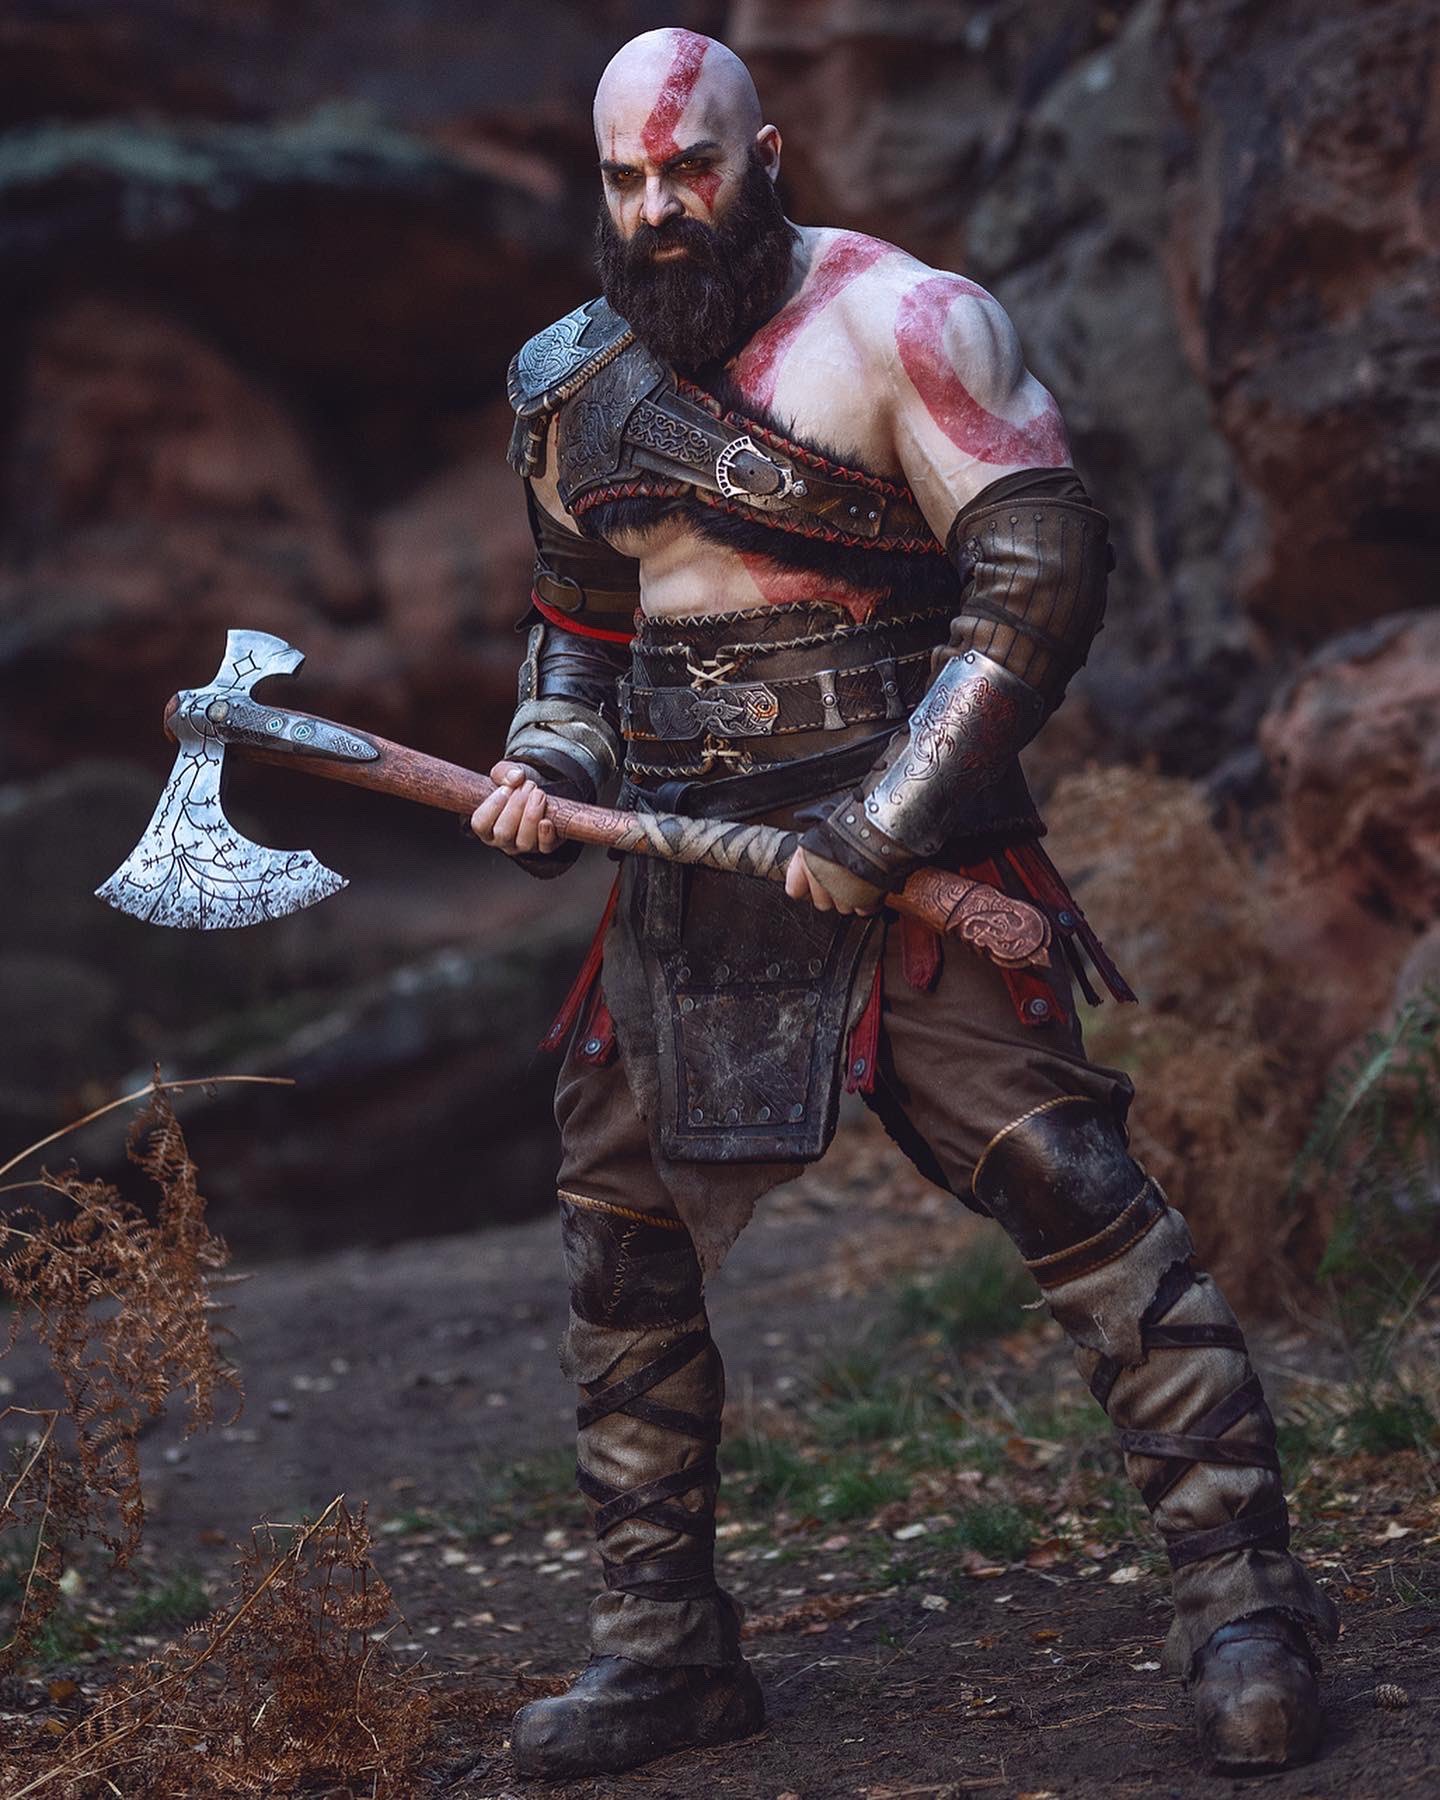 Kratos segura seu imponente machado! Certamente o deus da guerra está pronto para o combate - Imagem: Reprodução/Maul Cosplay